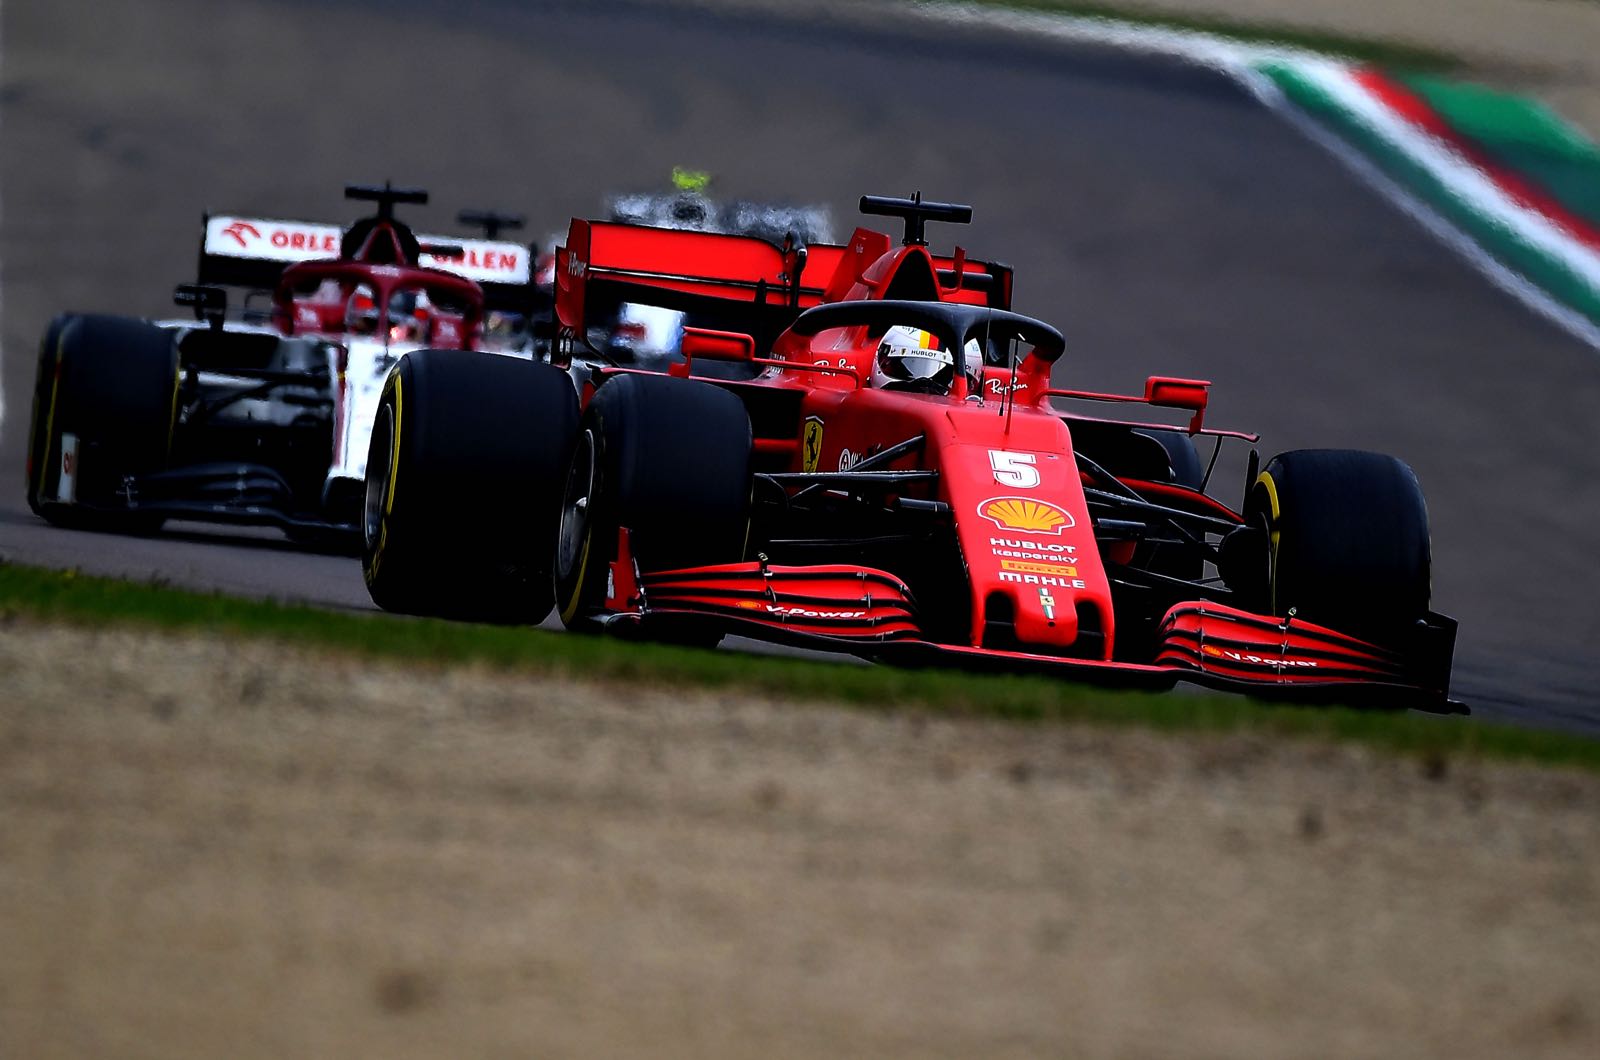 2020 At Ferrari Agony For Vettel Says Villeneuve